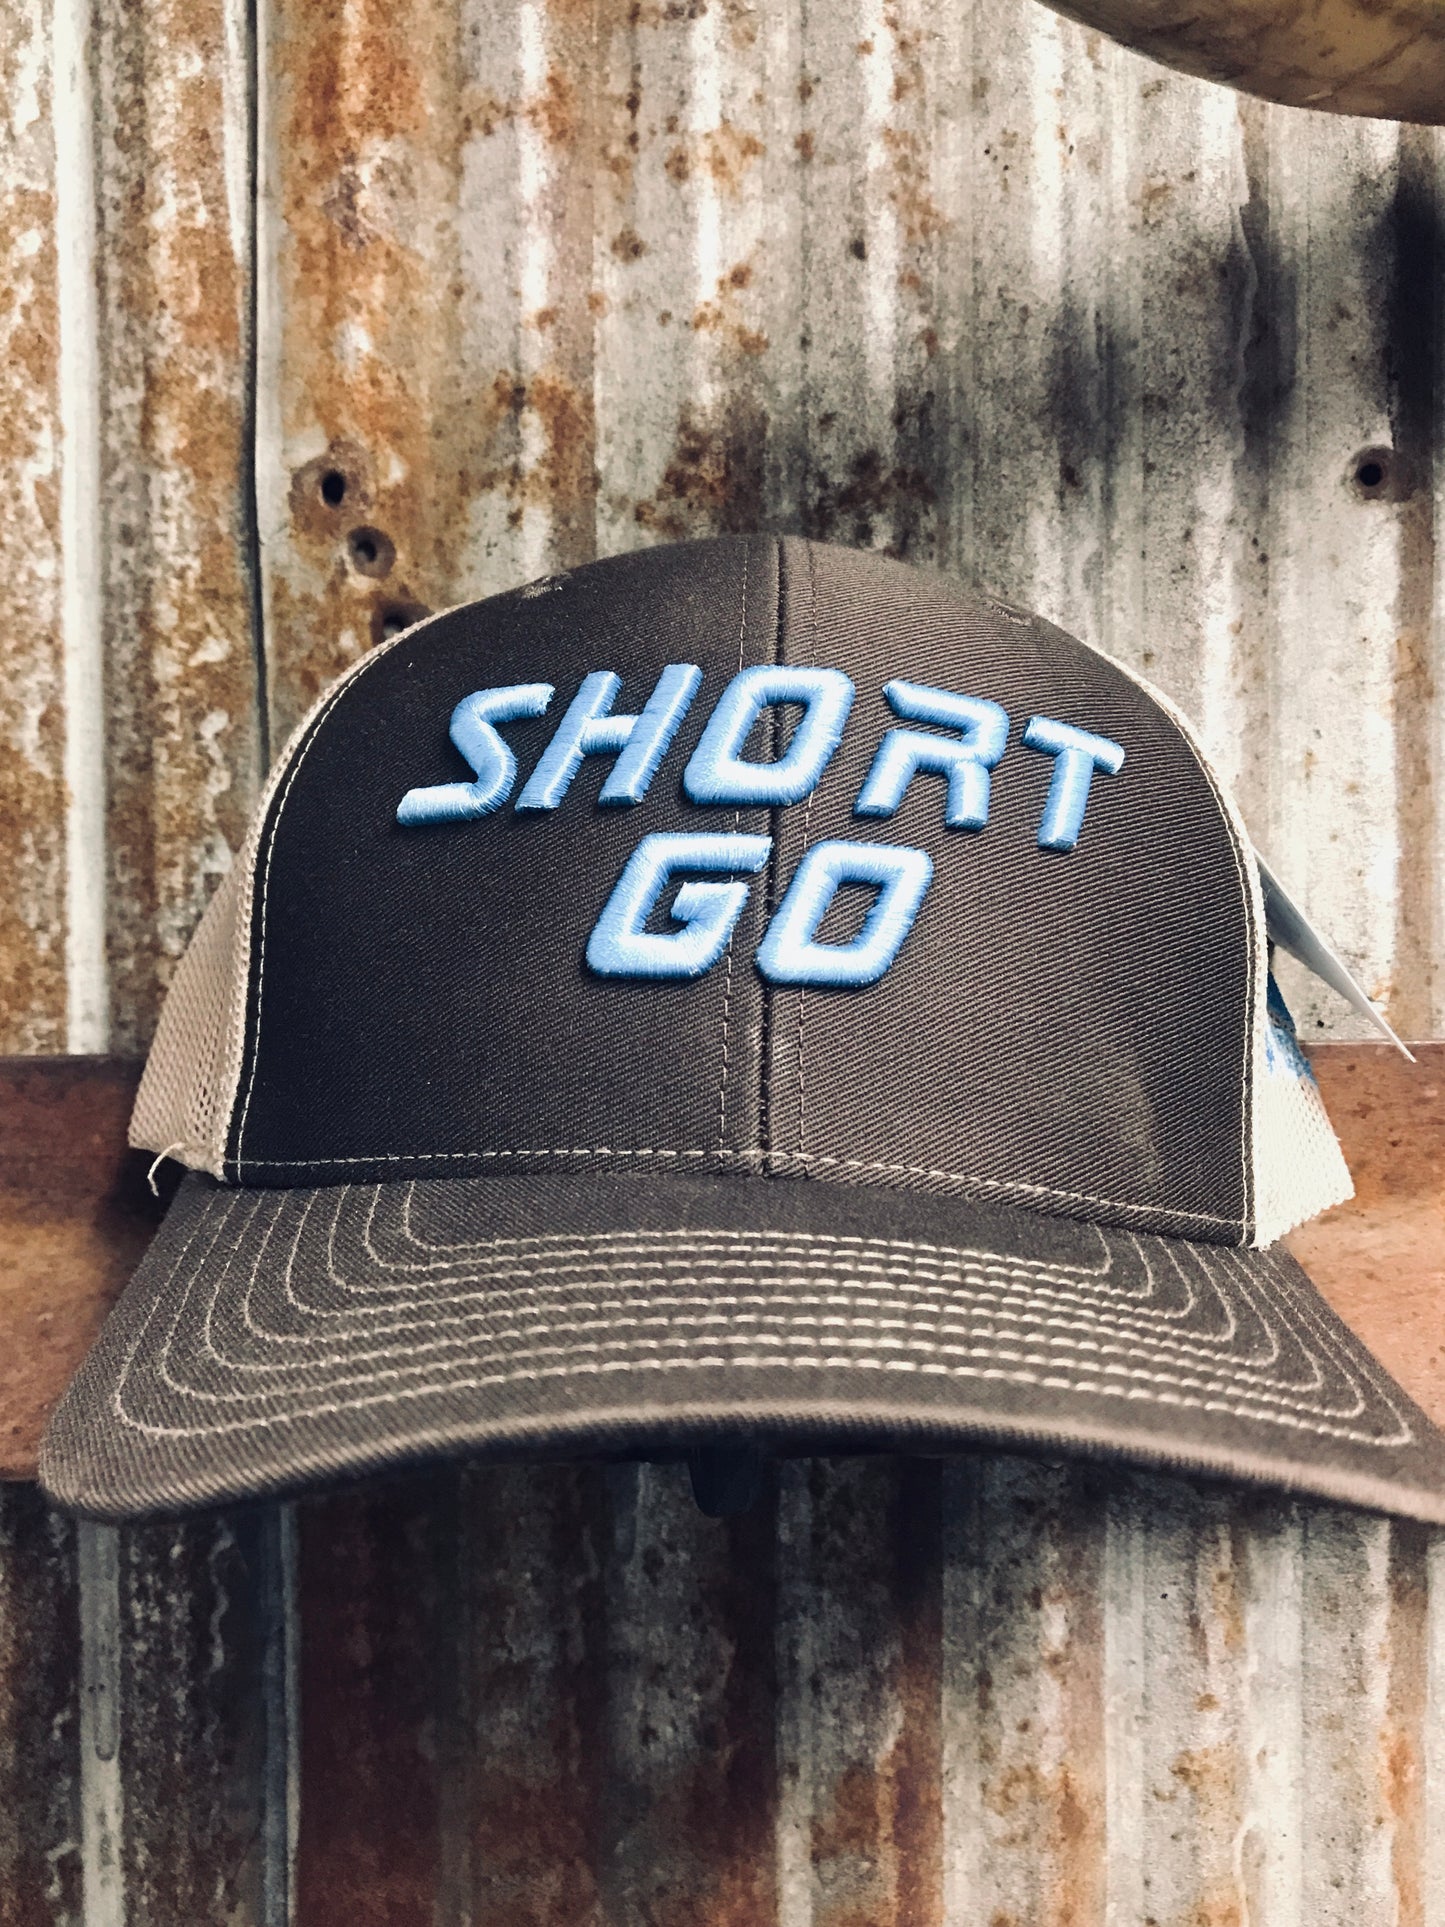 Short Go Caps